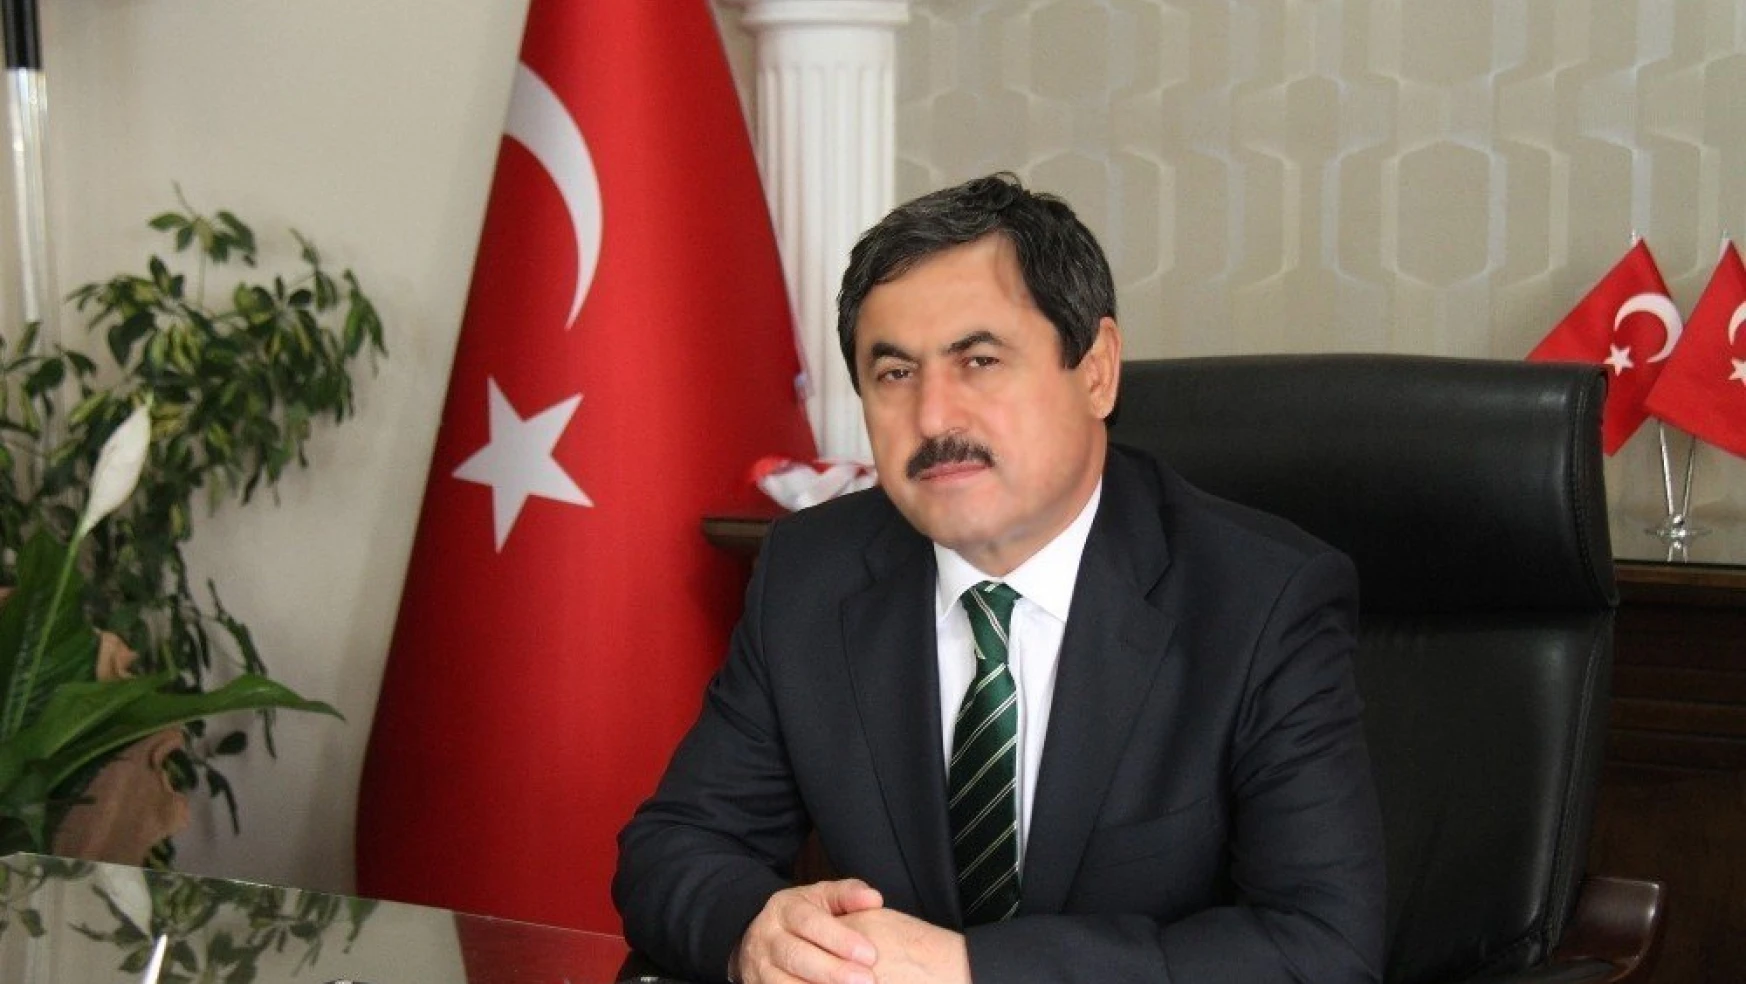 Darende Belediye Başkanı Dr. Süleyman Eser, Berat Kandilini kutladı
